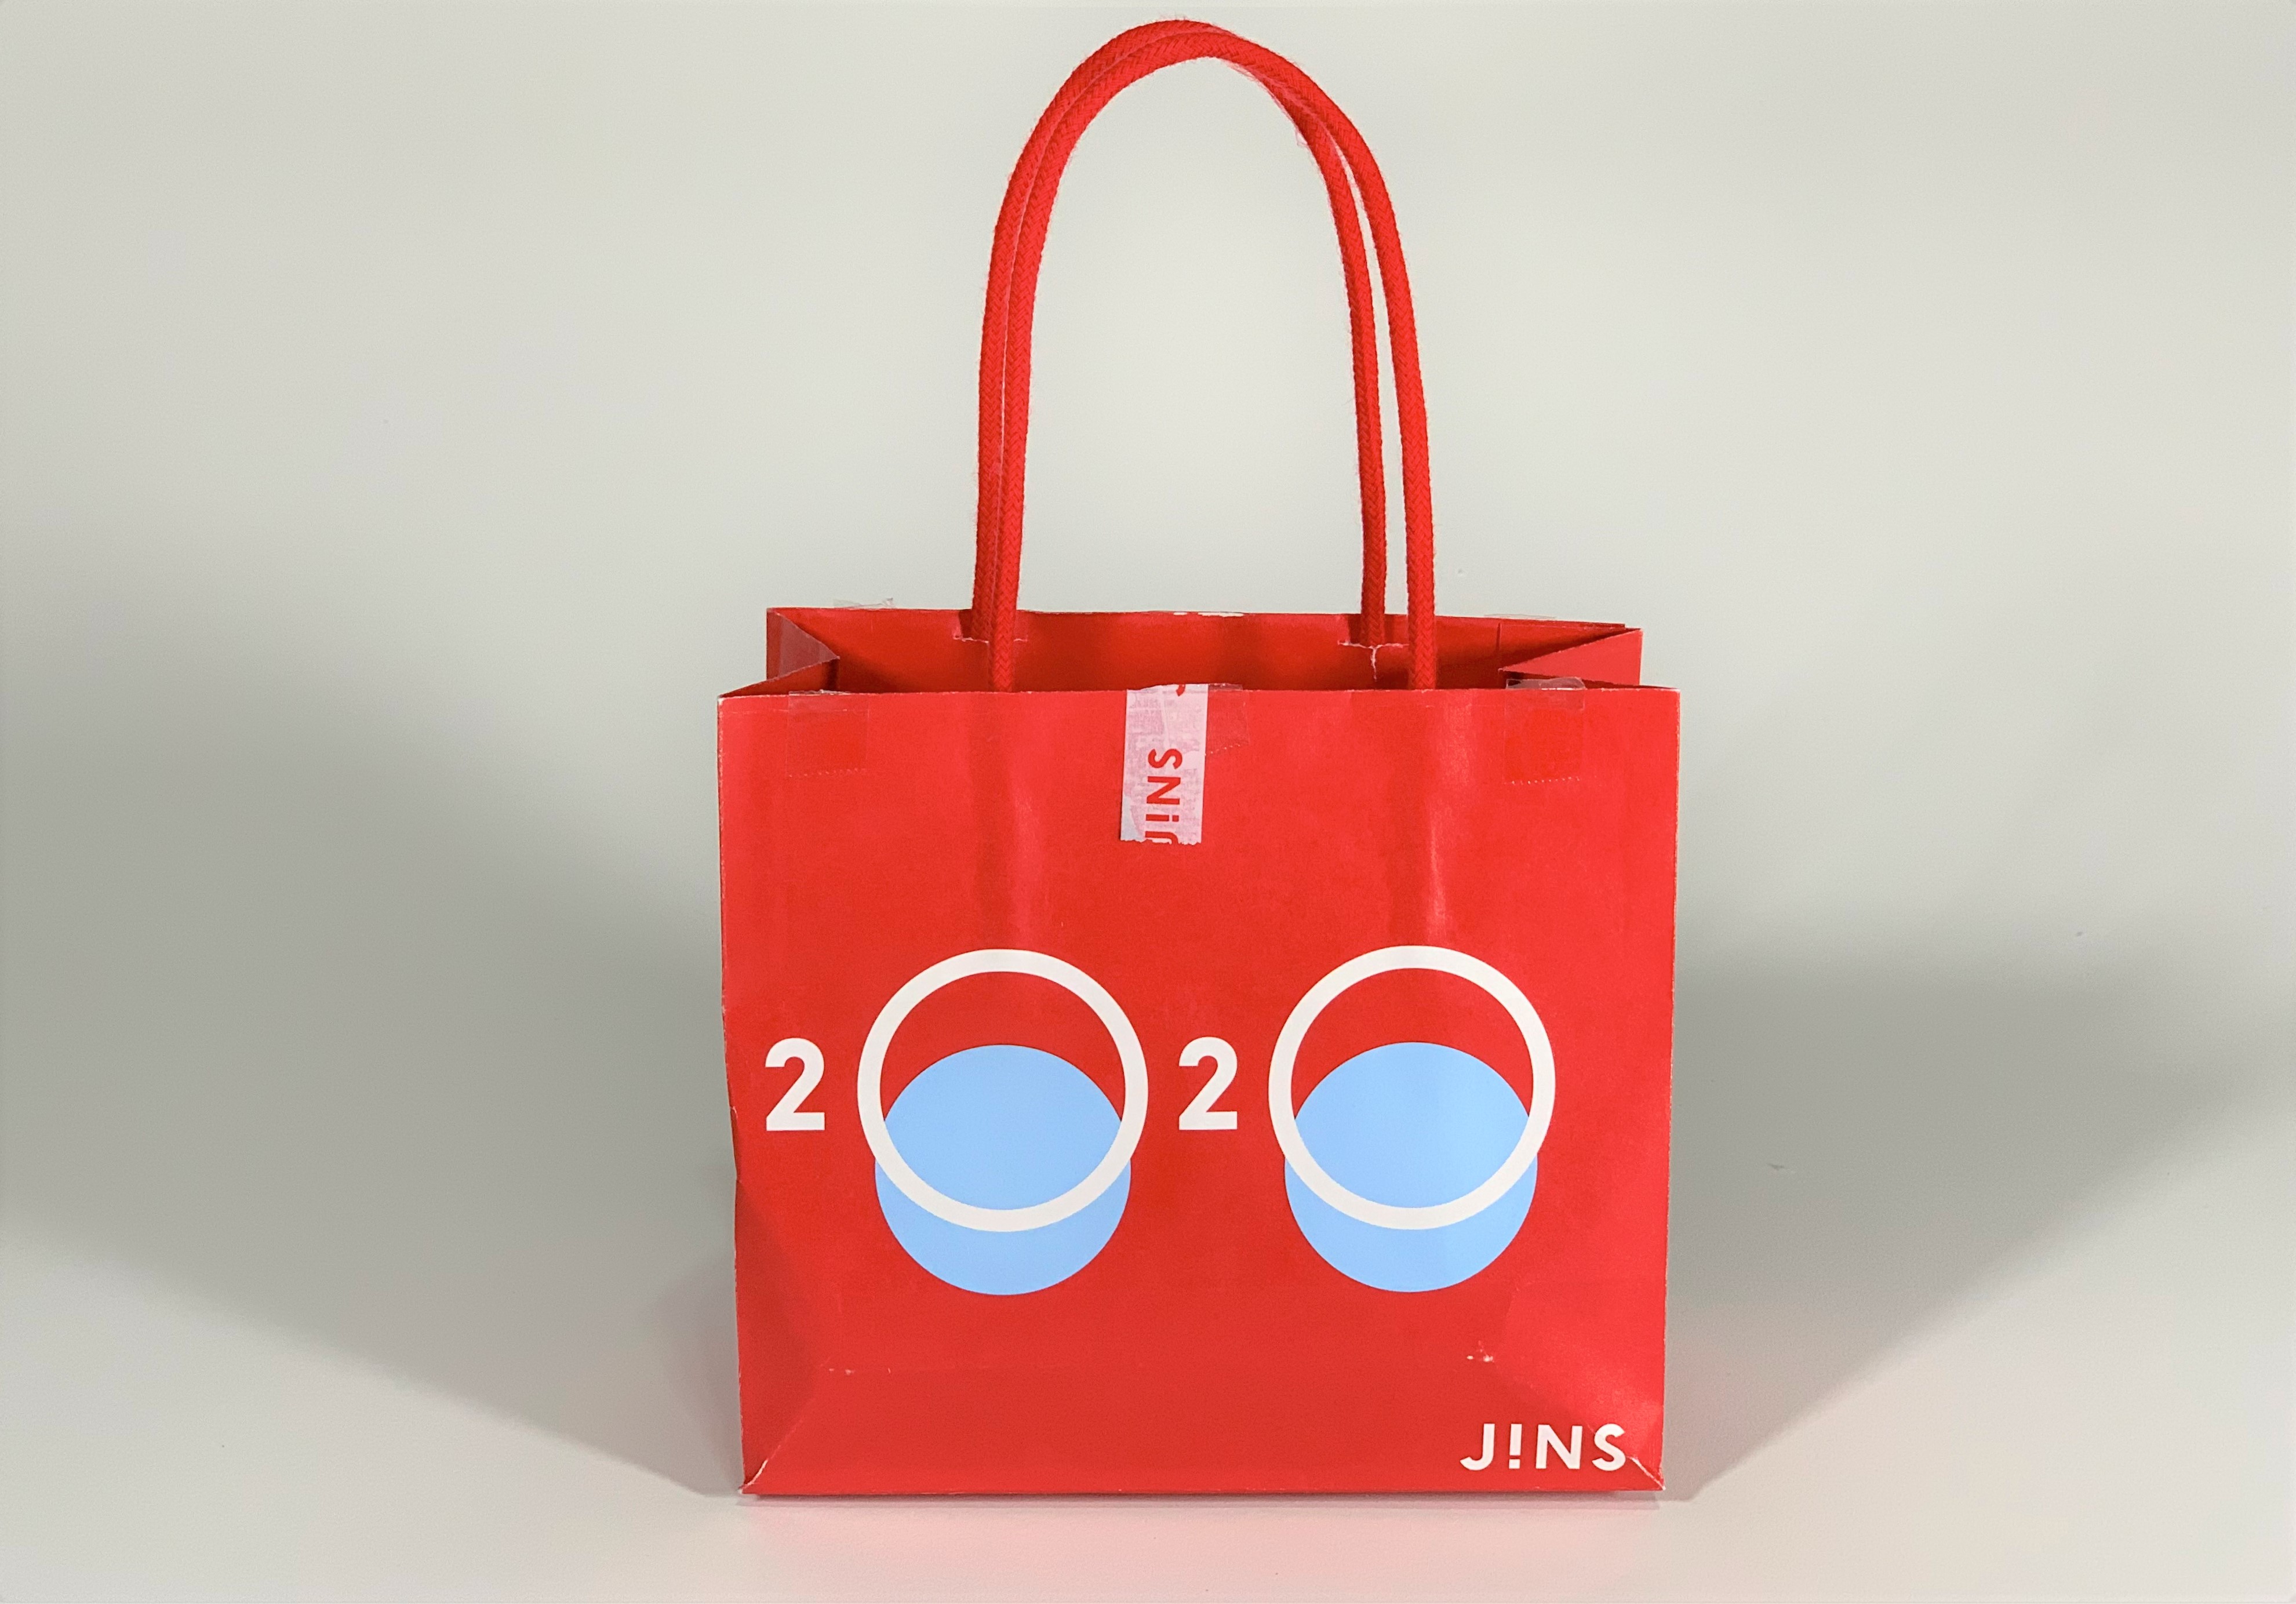 【2020年福袋特集】メガネチェーン『JINS』の福袋が得どころか赤字疑惑 / 正月とはいえ、なぜ「ソレ」を入れた!? | ロケットニュース24